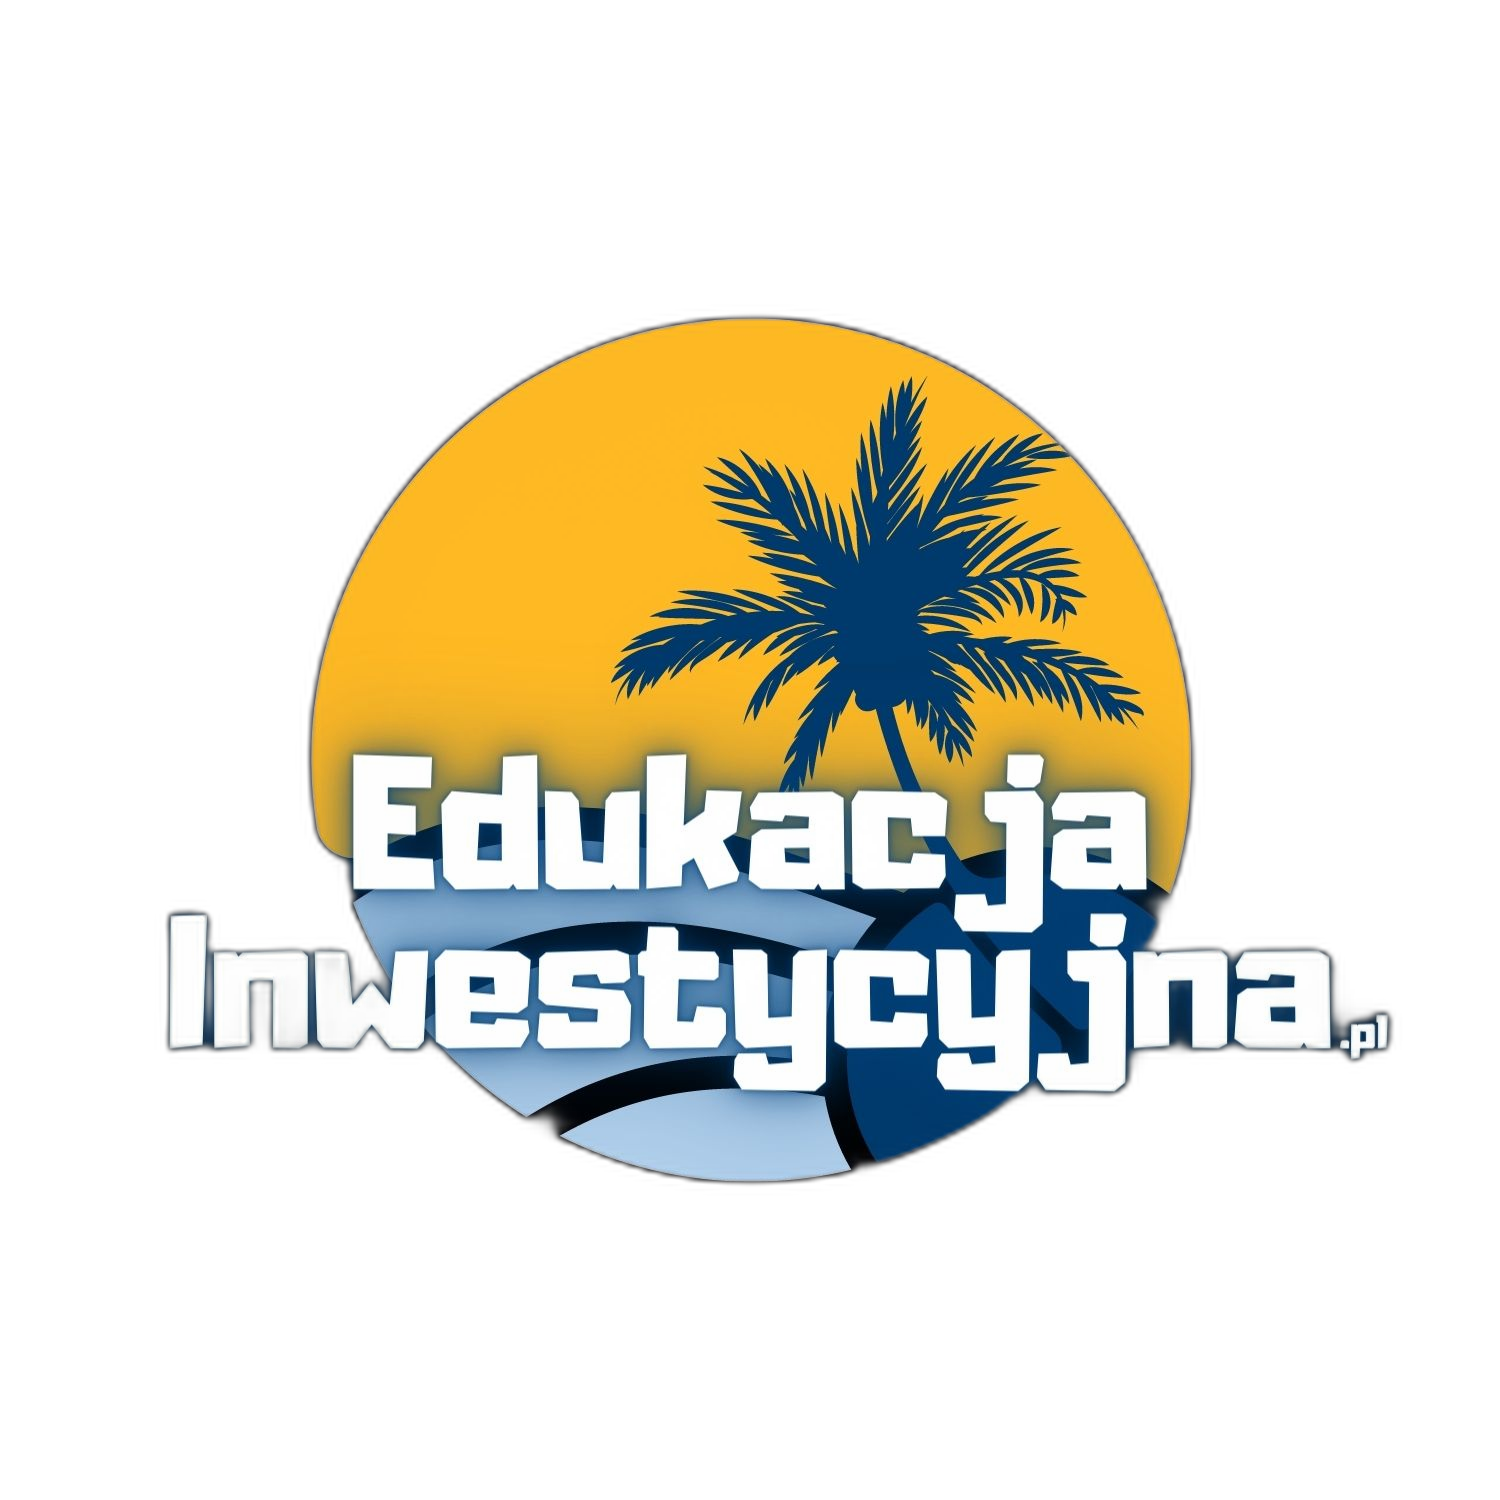 Edukacja inwestycyjna   logo z napisem